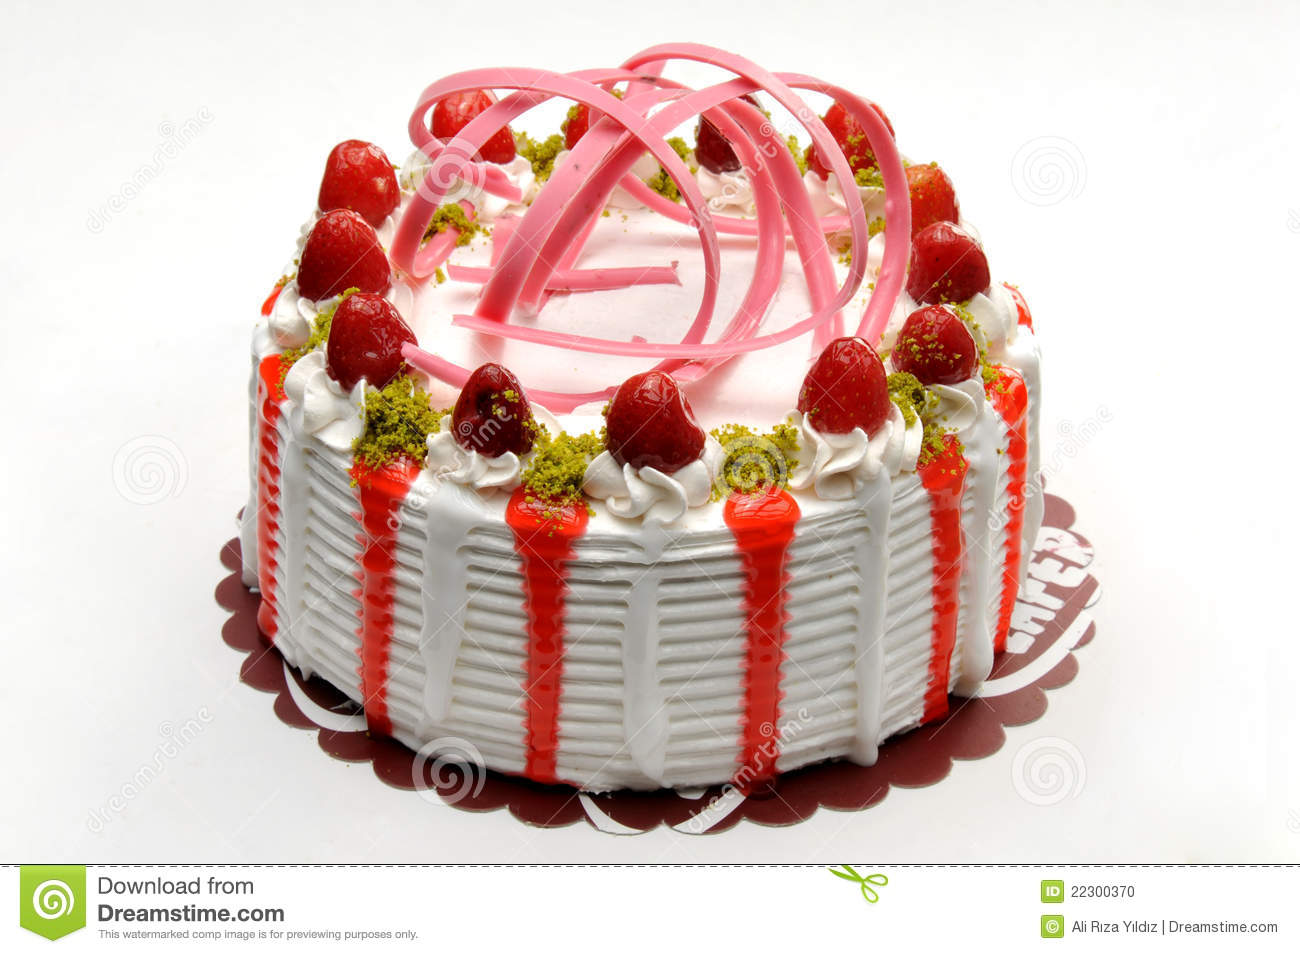 Strawberry Cake Stock Photo   Image  22300370